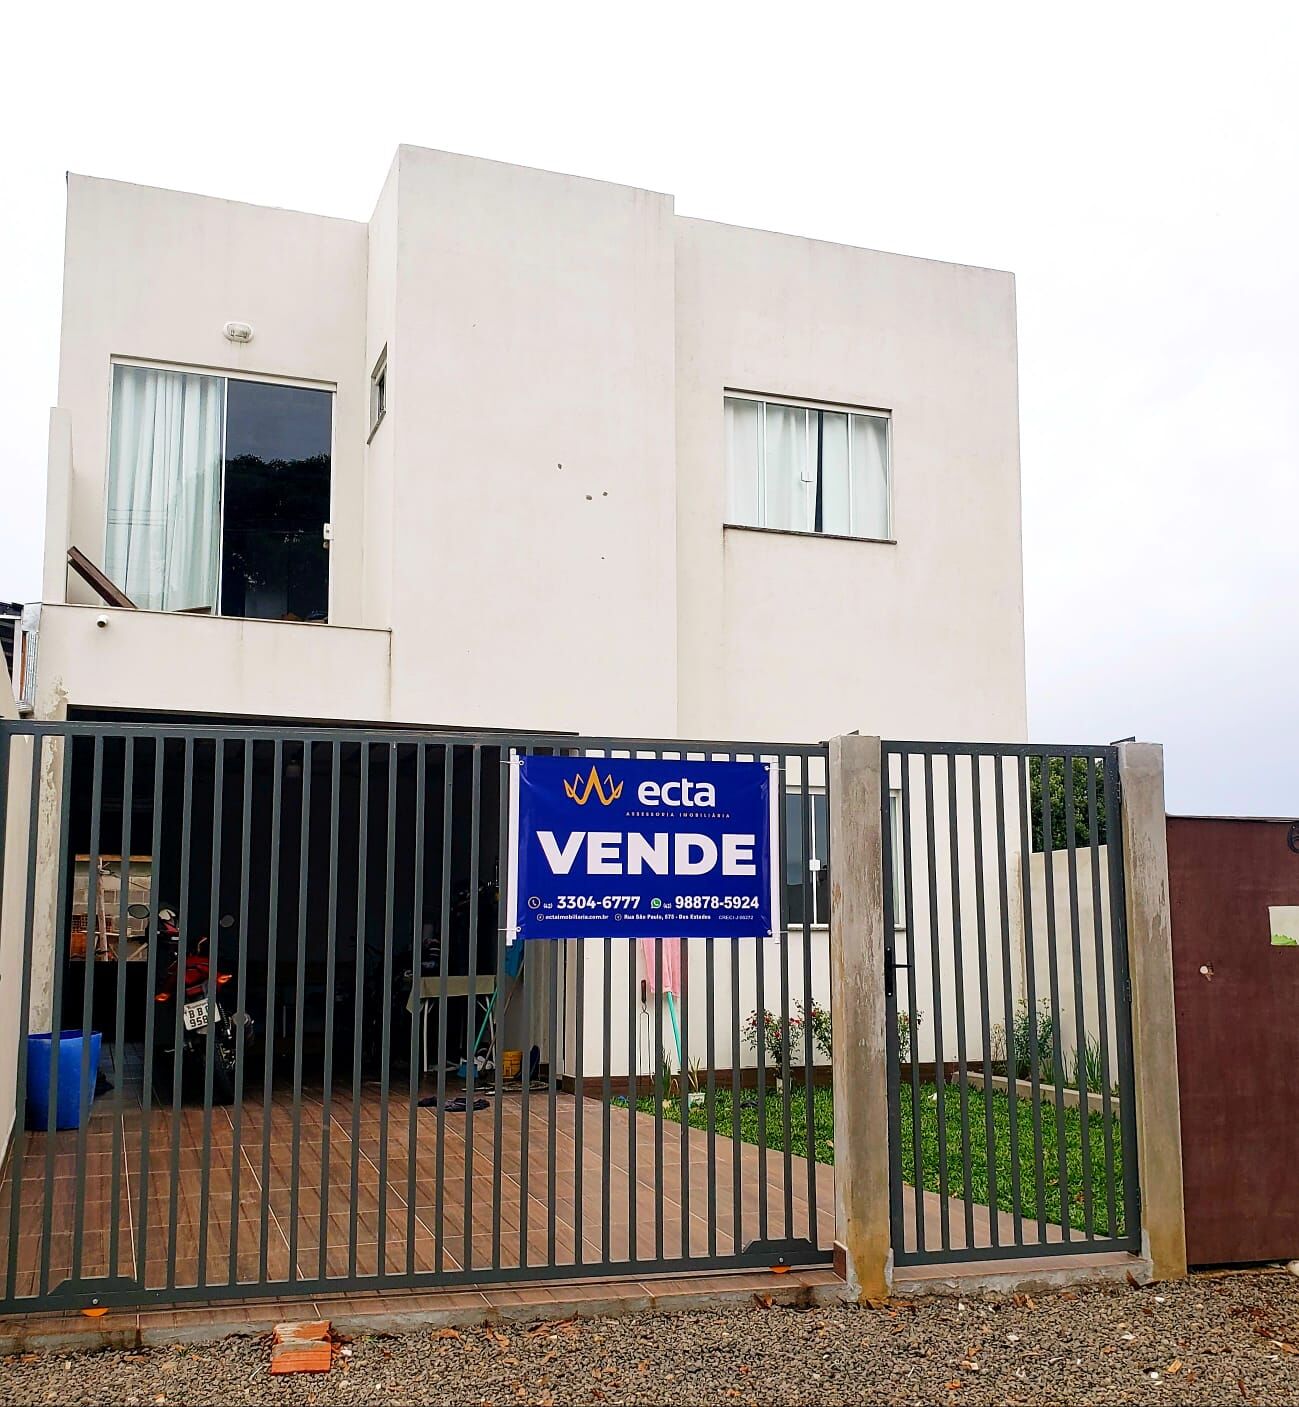 Sobrado com 3 dormitórios à venda, Vila Bela, GUARAPUAVA - PR